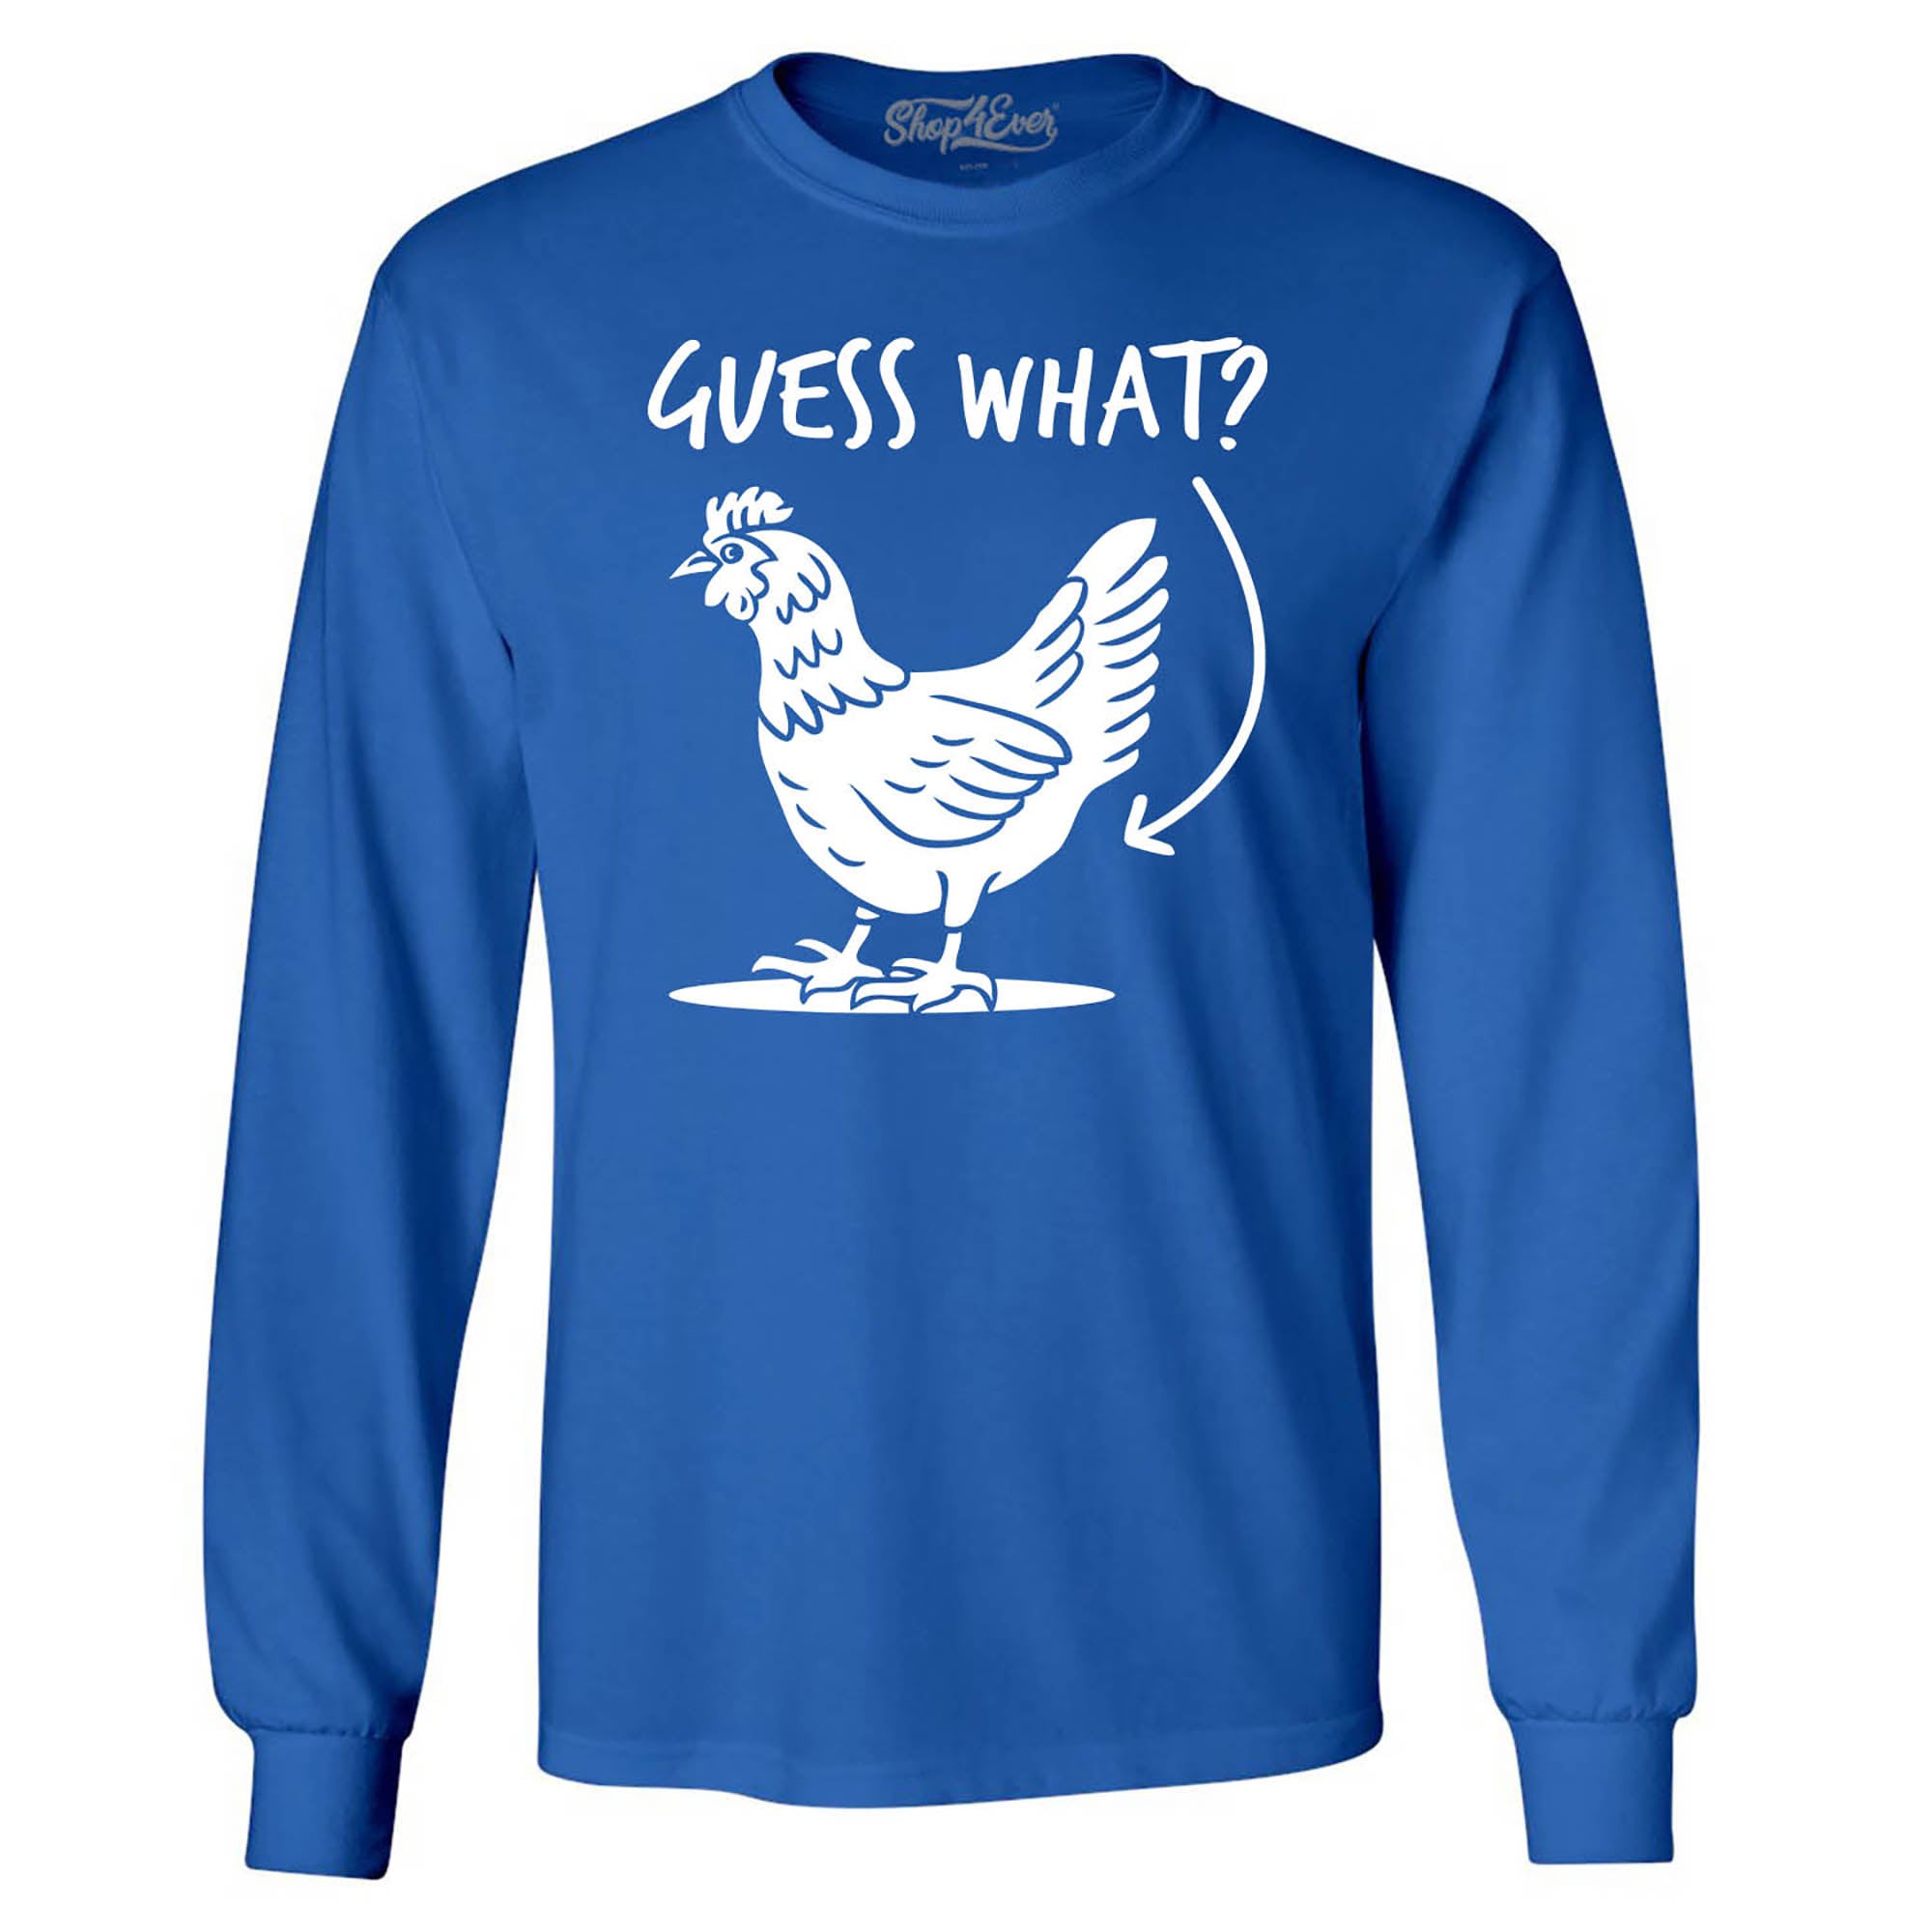 Guess What? Chicken Butt Long Sleeve Shirt